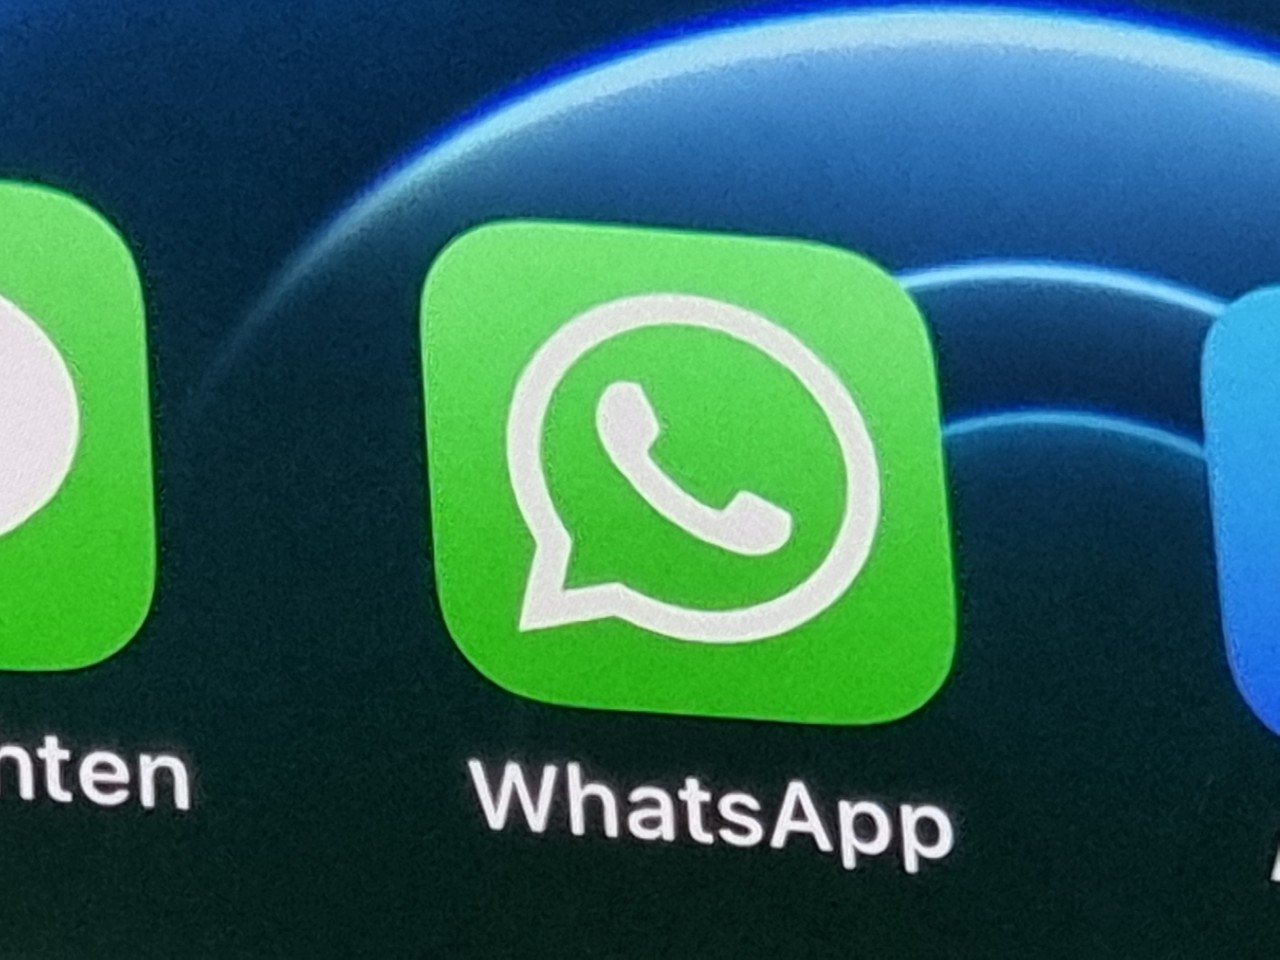 Bei Whatsapp gibt es eine Neuerung bei Anrufen. (Symbolbild)